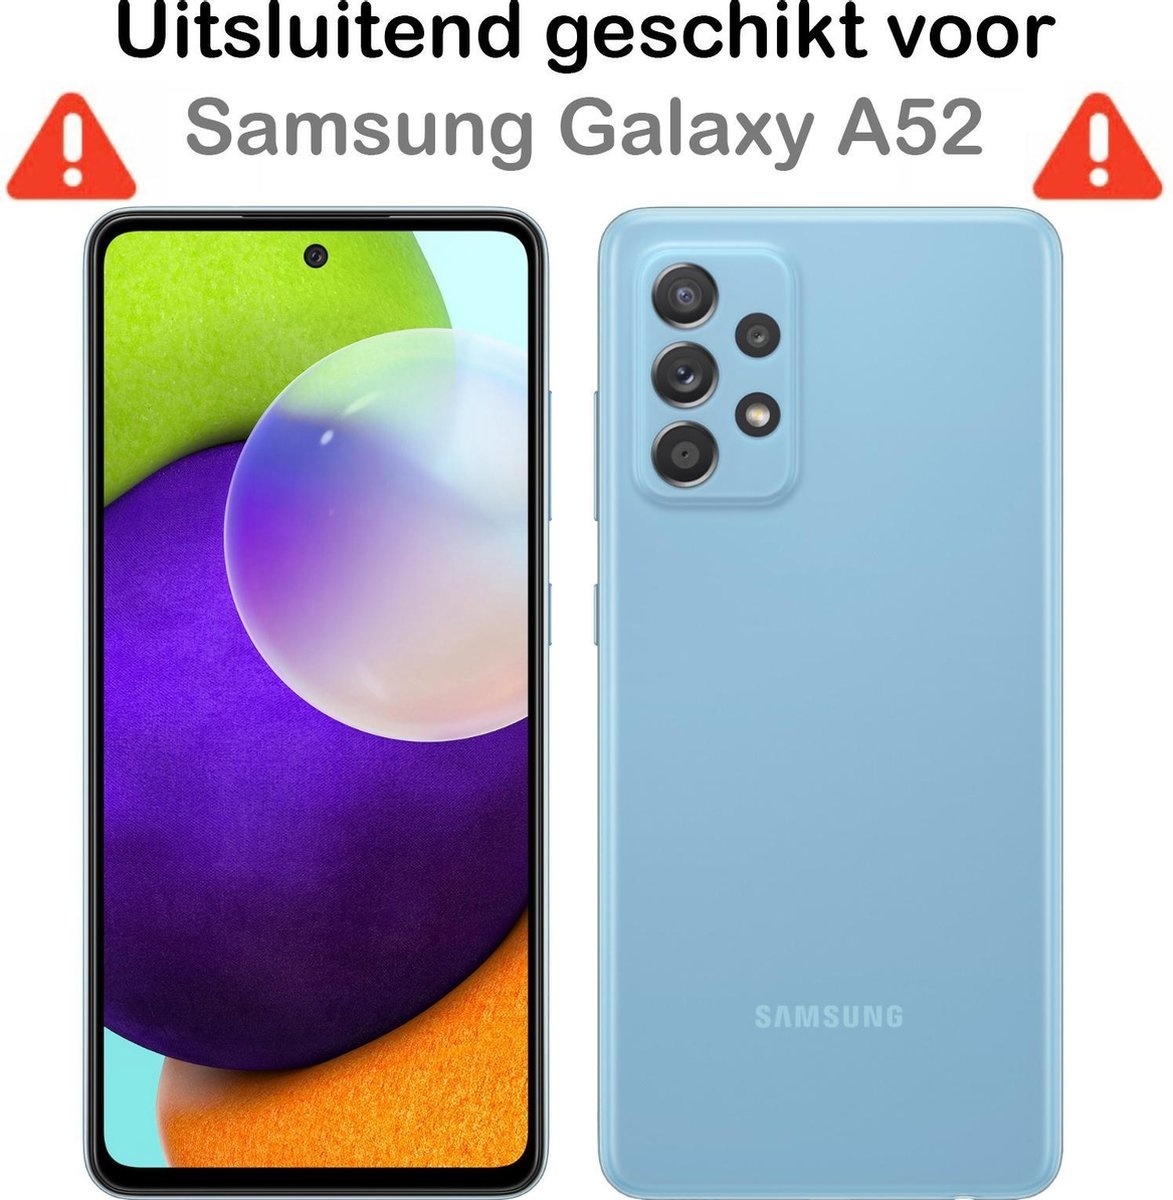 Samsung Galaxy A52s Hoesje Shock Proof Zwart - Samsung Galaxy A52s Hoesje Zwart Case Shock - Samsung Galaxy A52s Zwart Shock Proof Back Case